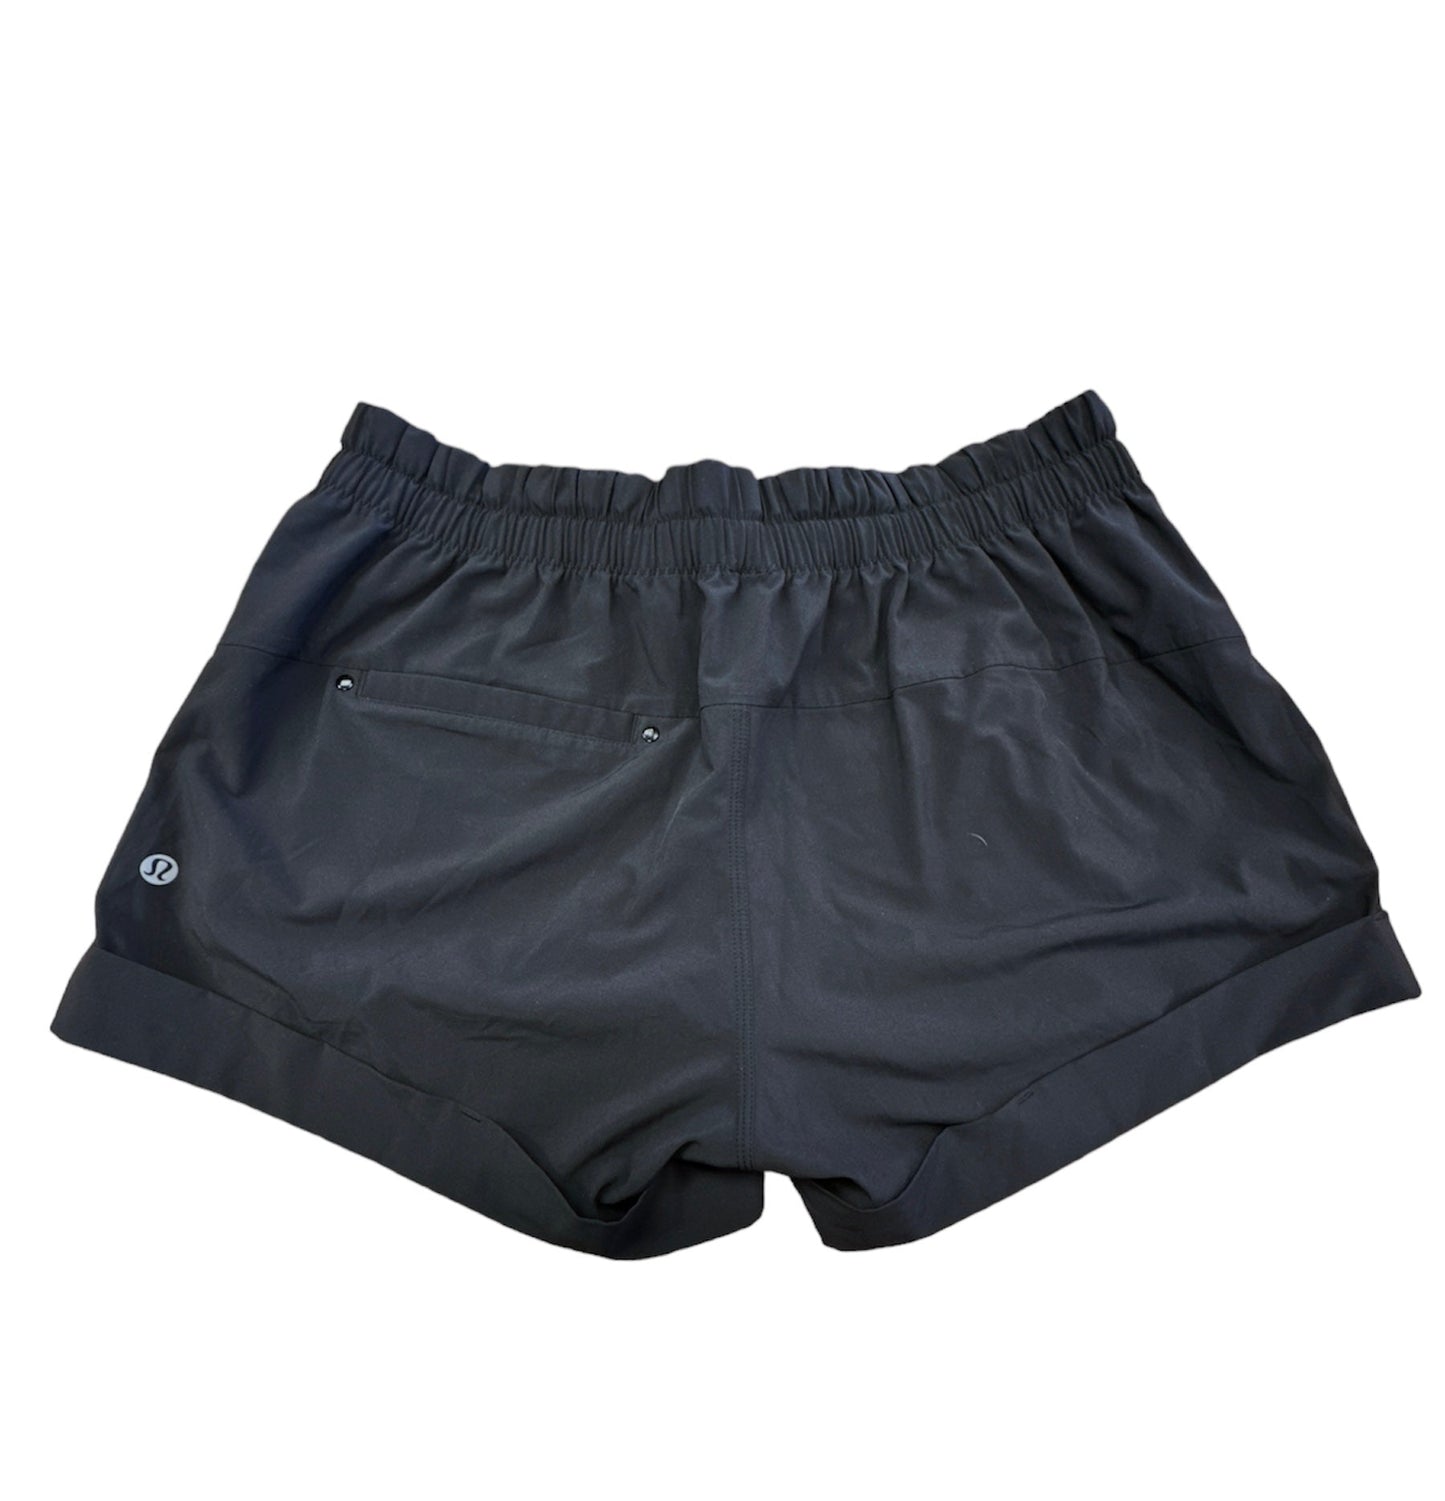 Black Athletic Shorts Lululemon, Size 10